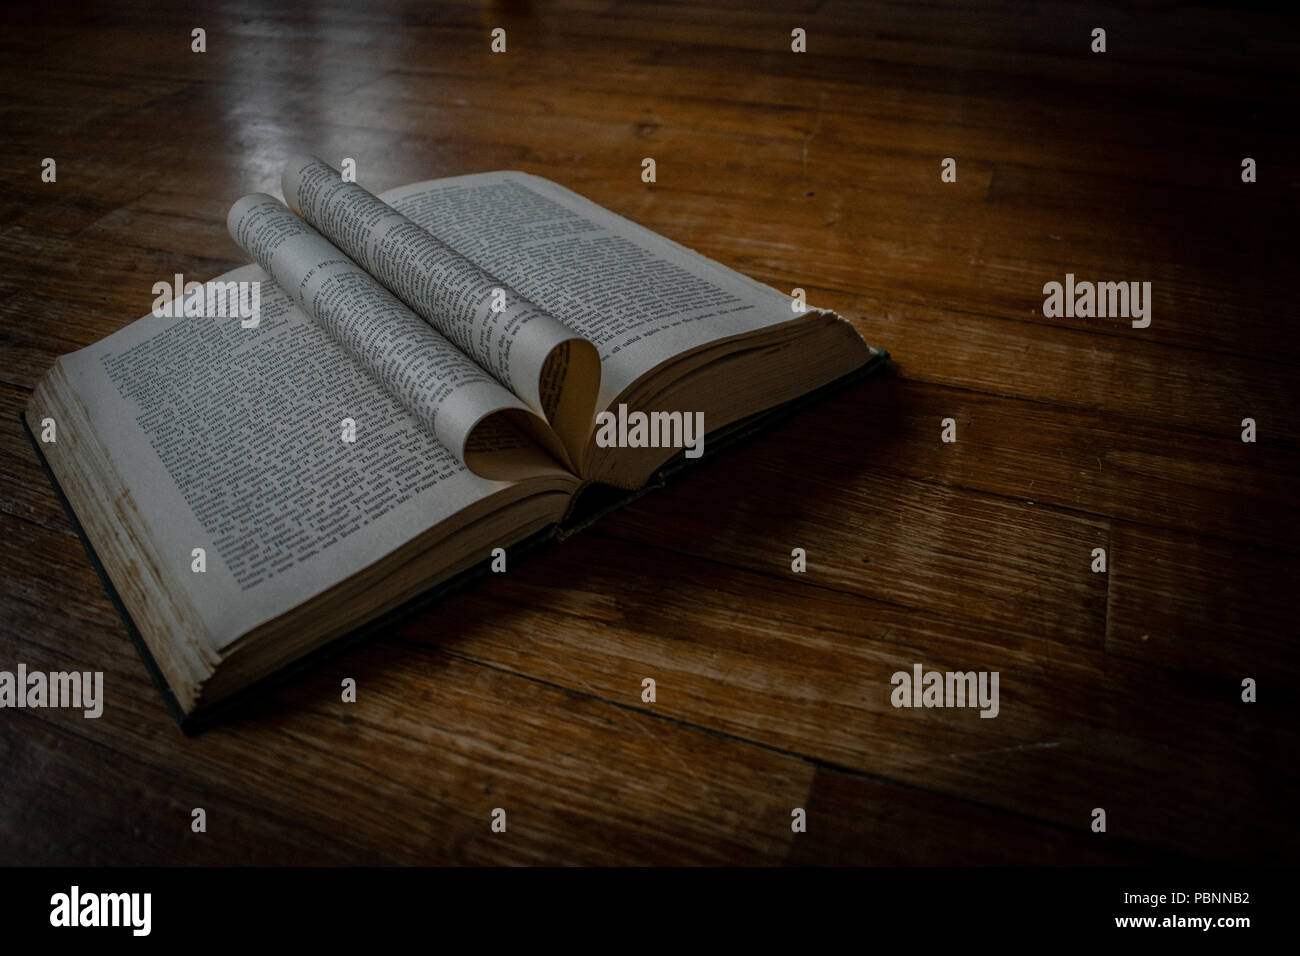 Libro aperto su di un pavimento in legno con heartshaped aprire le pagine al centro e un po' di luce naturale. Foto Stock